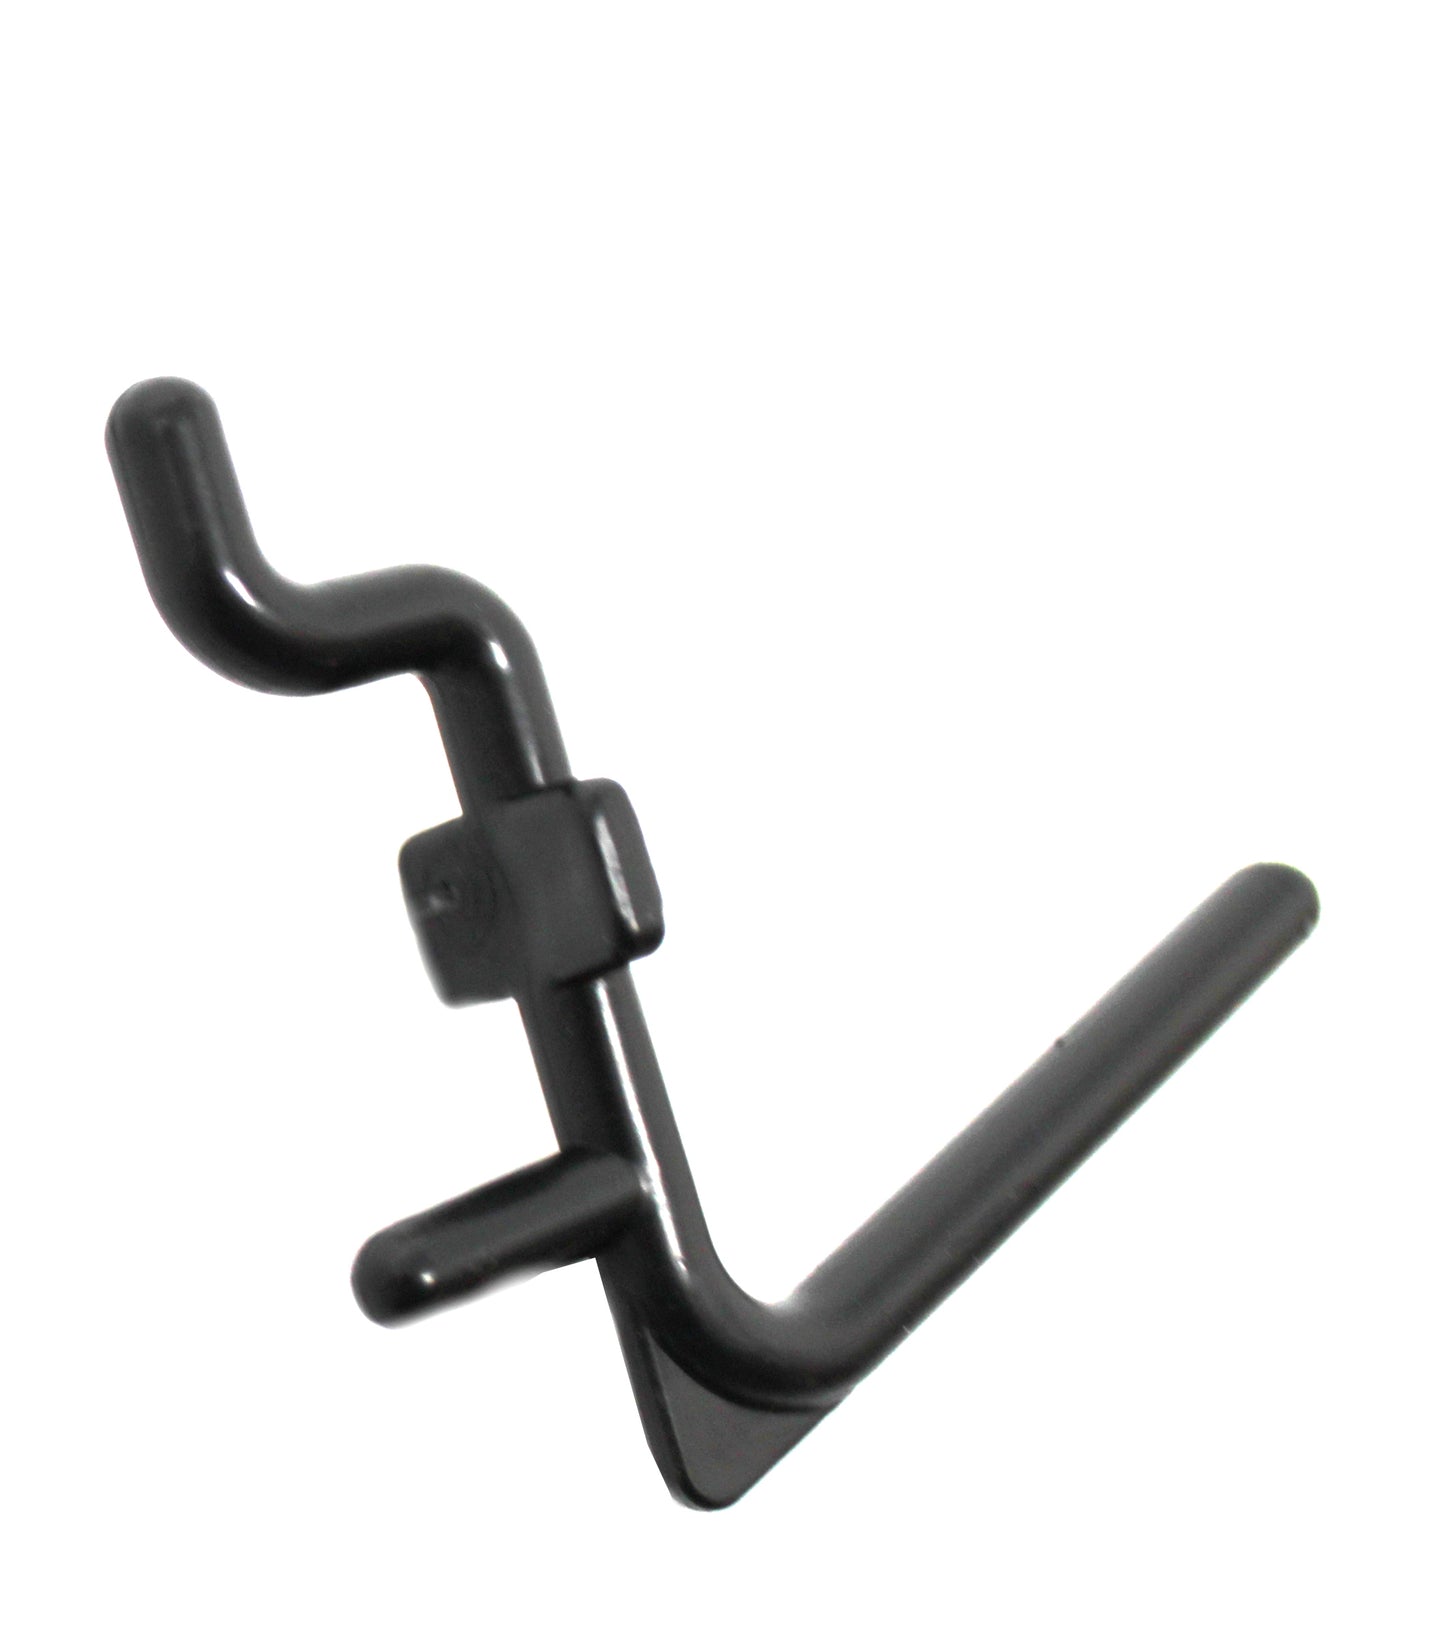 NON-Locking L Style Black Plastic Pegboard Hooks Plastic Pegboard Hooks - Crafts / Tools